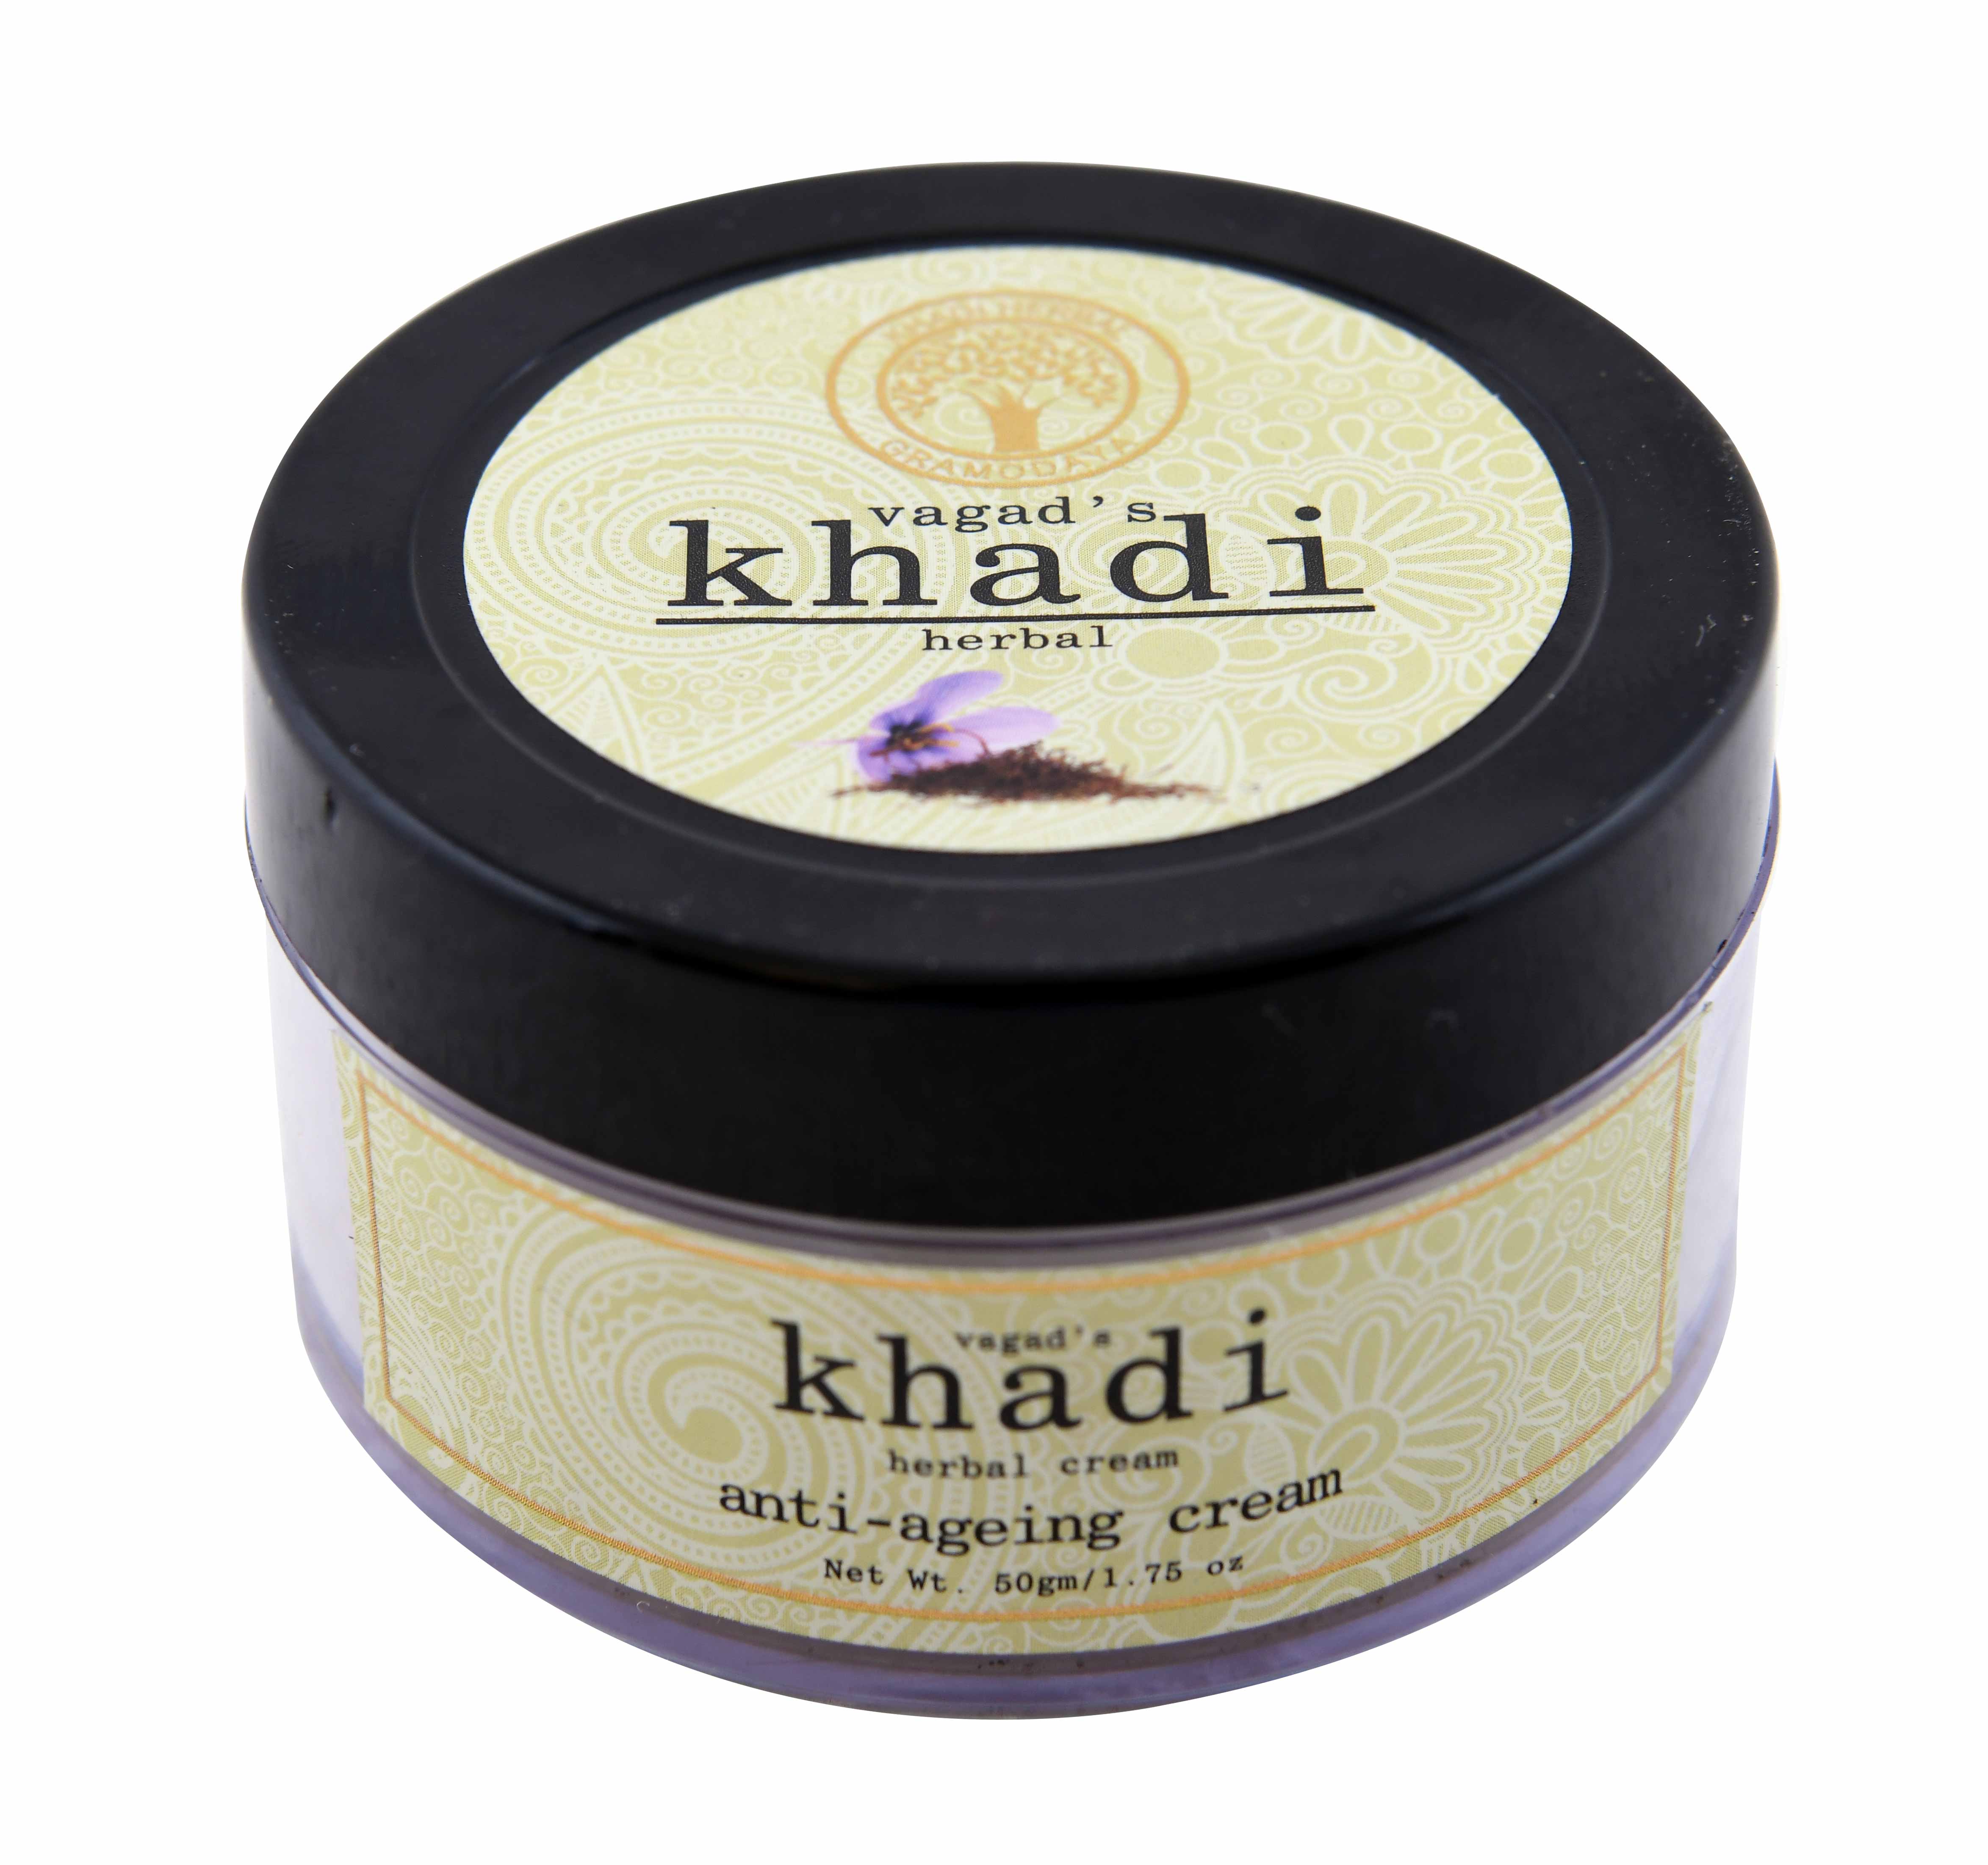 Buy Vagad's Khadi Anti Ageing Cream at Best Price Online